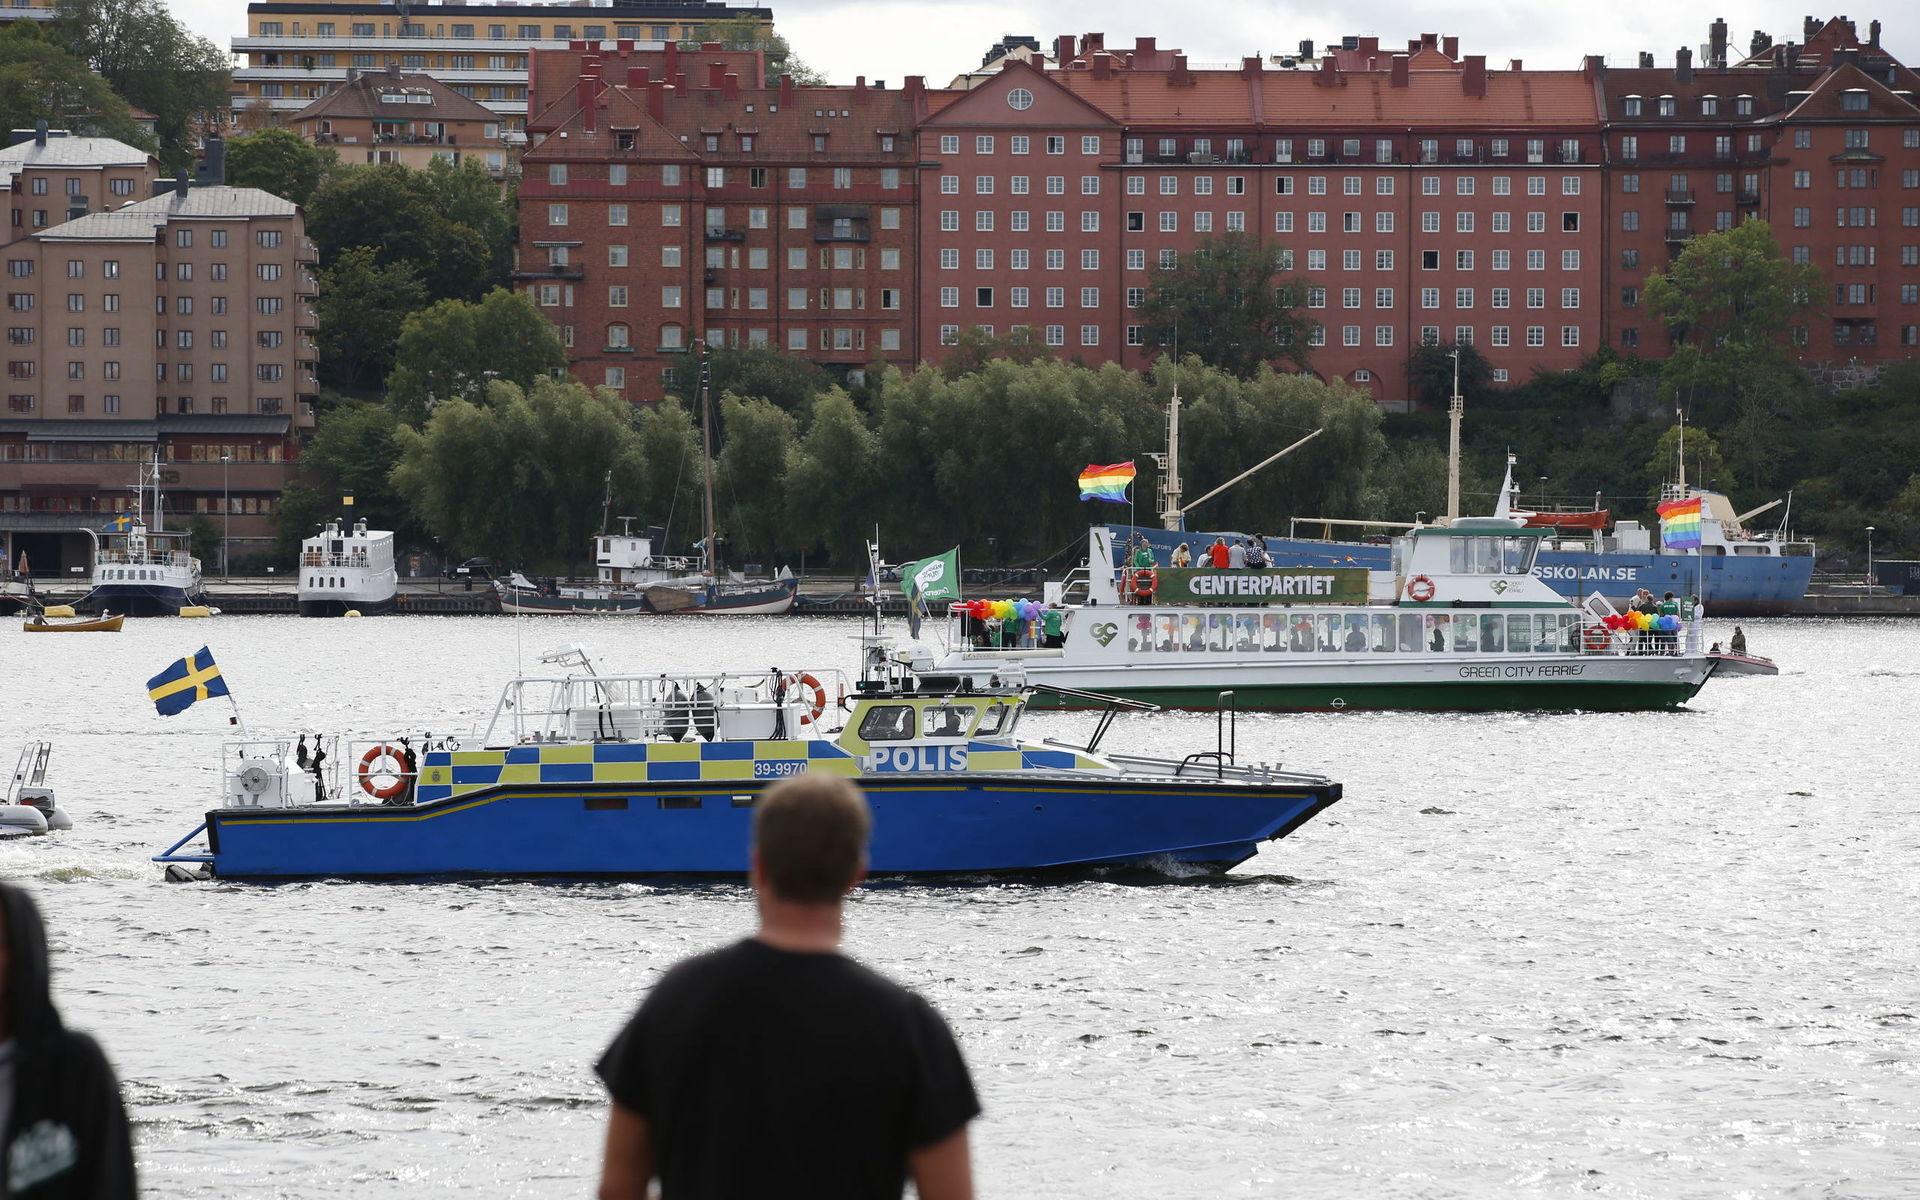 Polisbåt patrullerar vattnet utanför Kungsholms torg under NMR-demonstrationen i Stockholm.